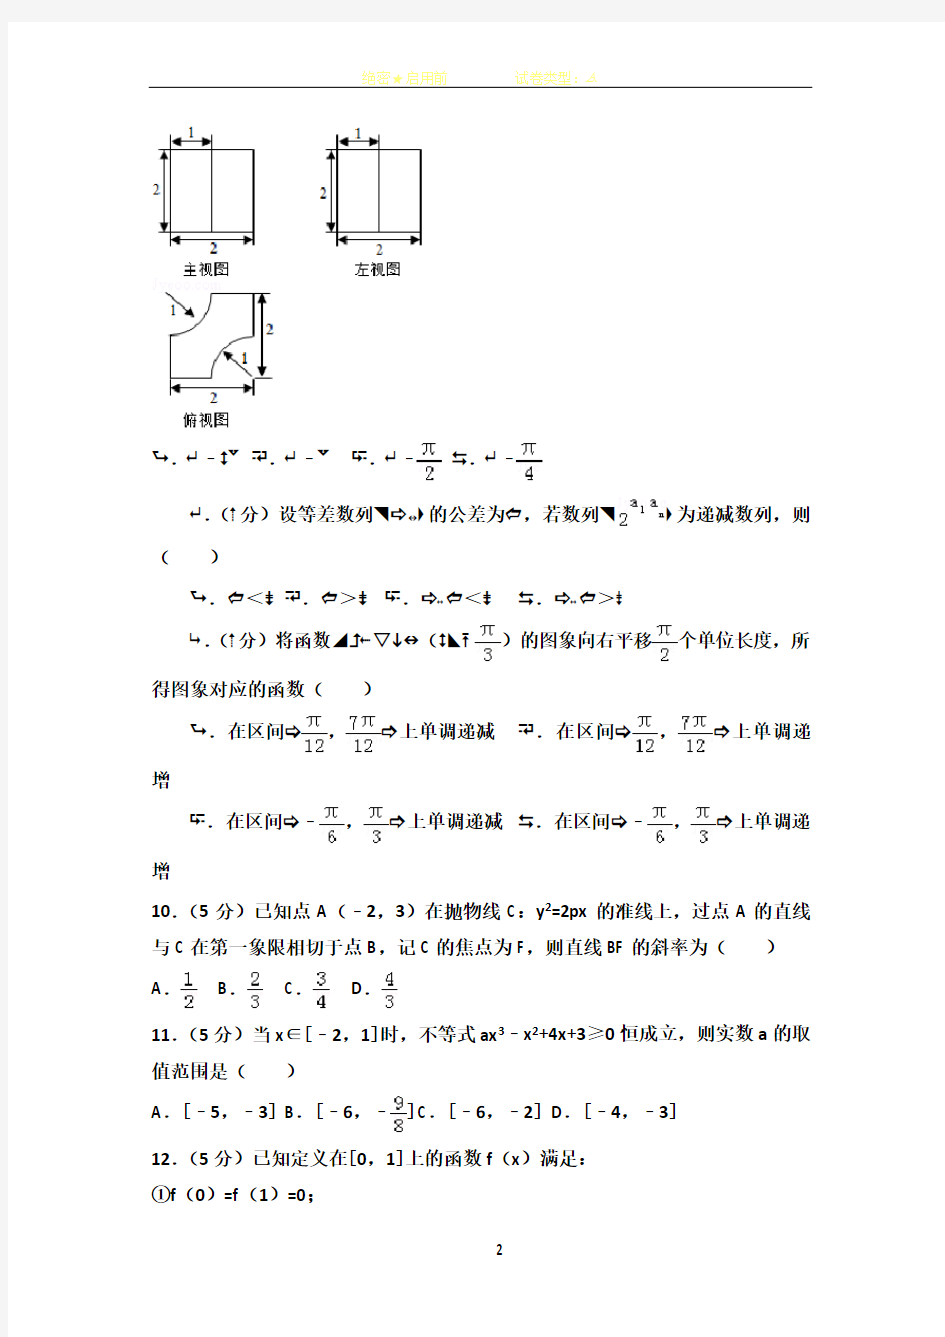 2014年辽宁省高考数学试卷(理科)